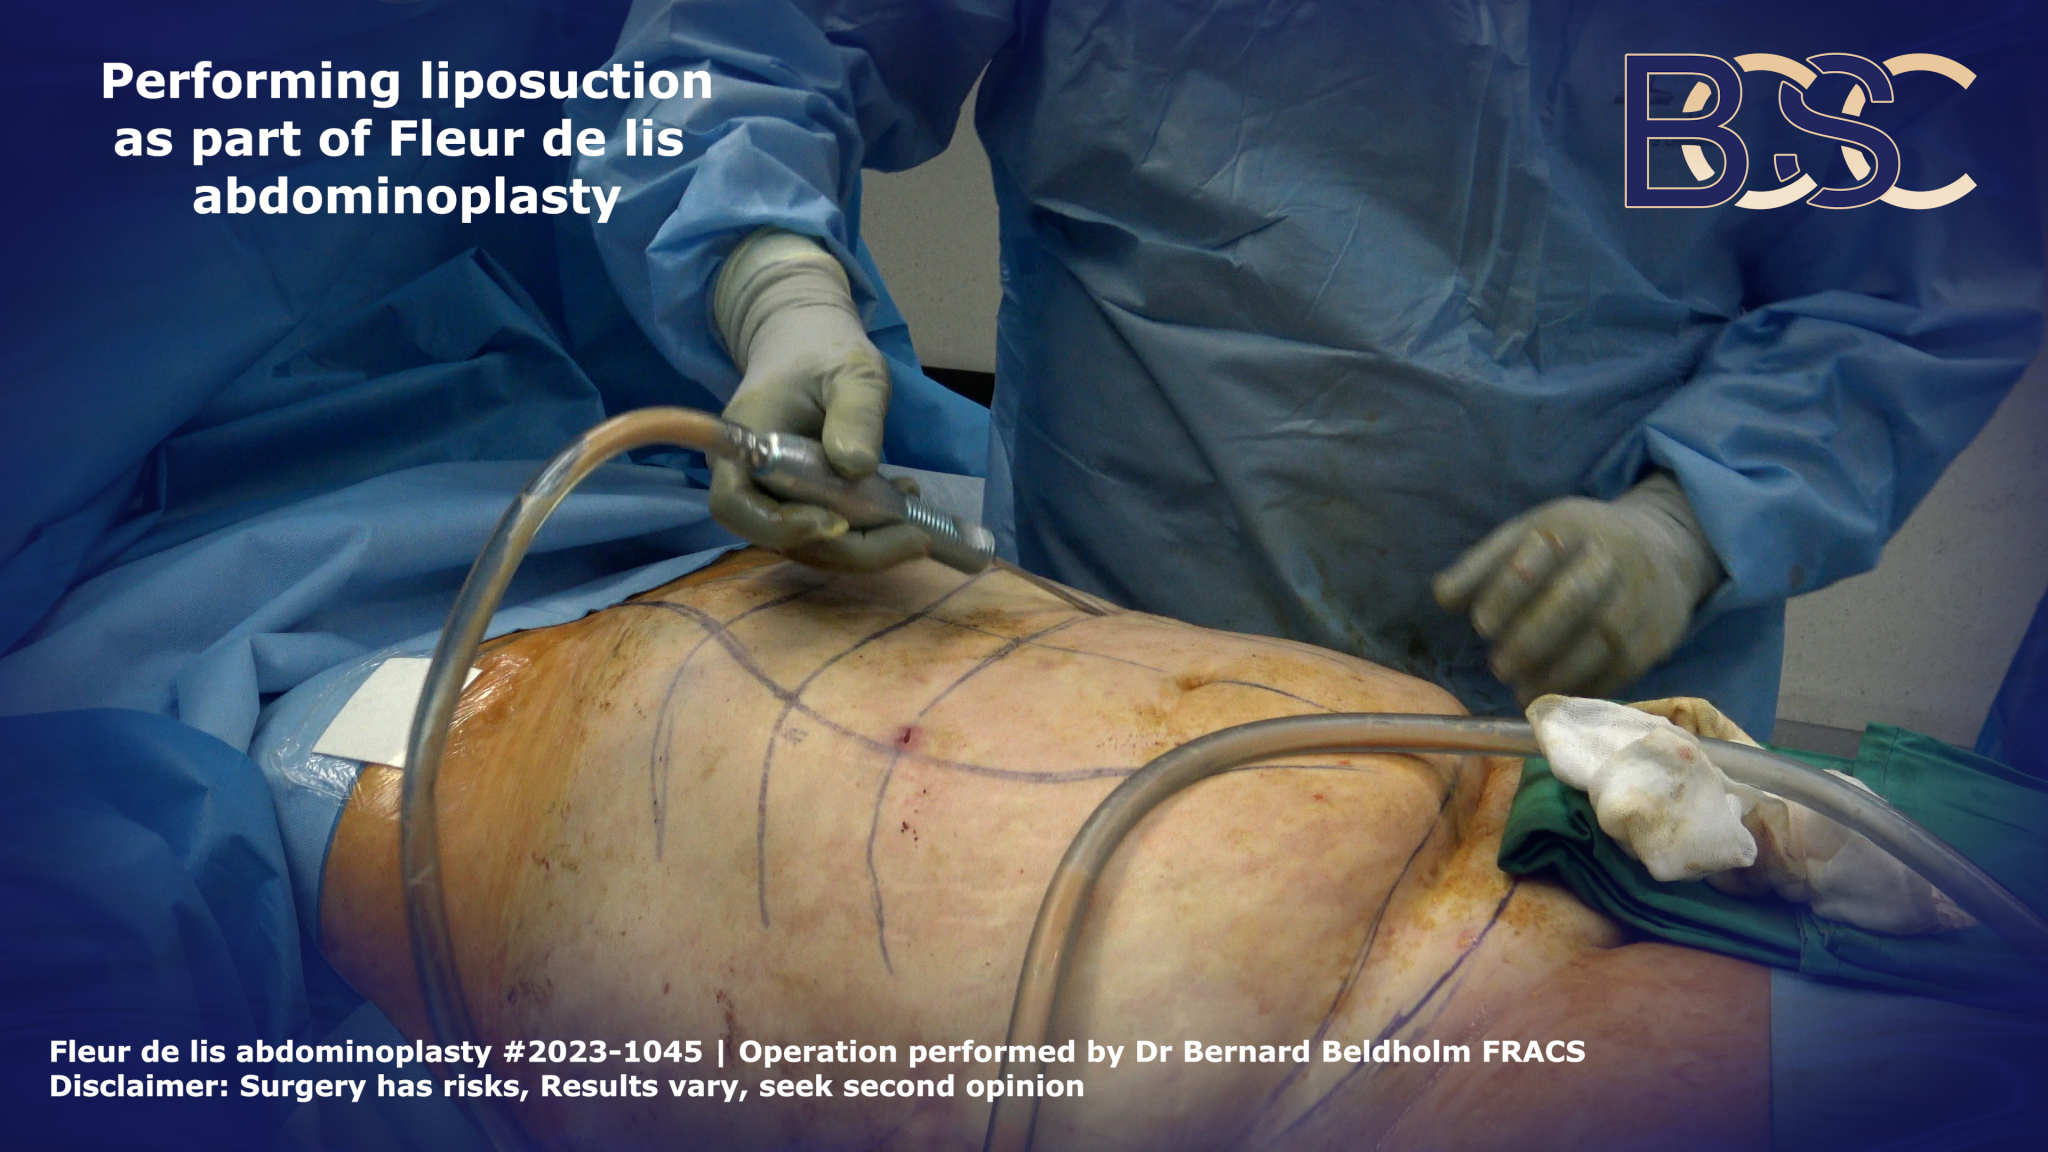 Liposuction as part of Fleur de lis abdominoplasty | BCSC